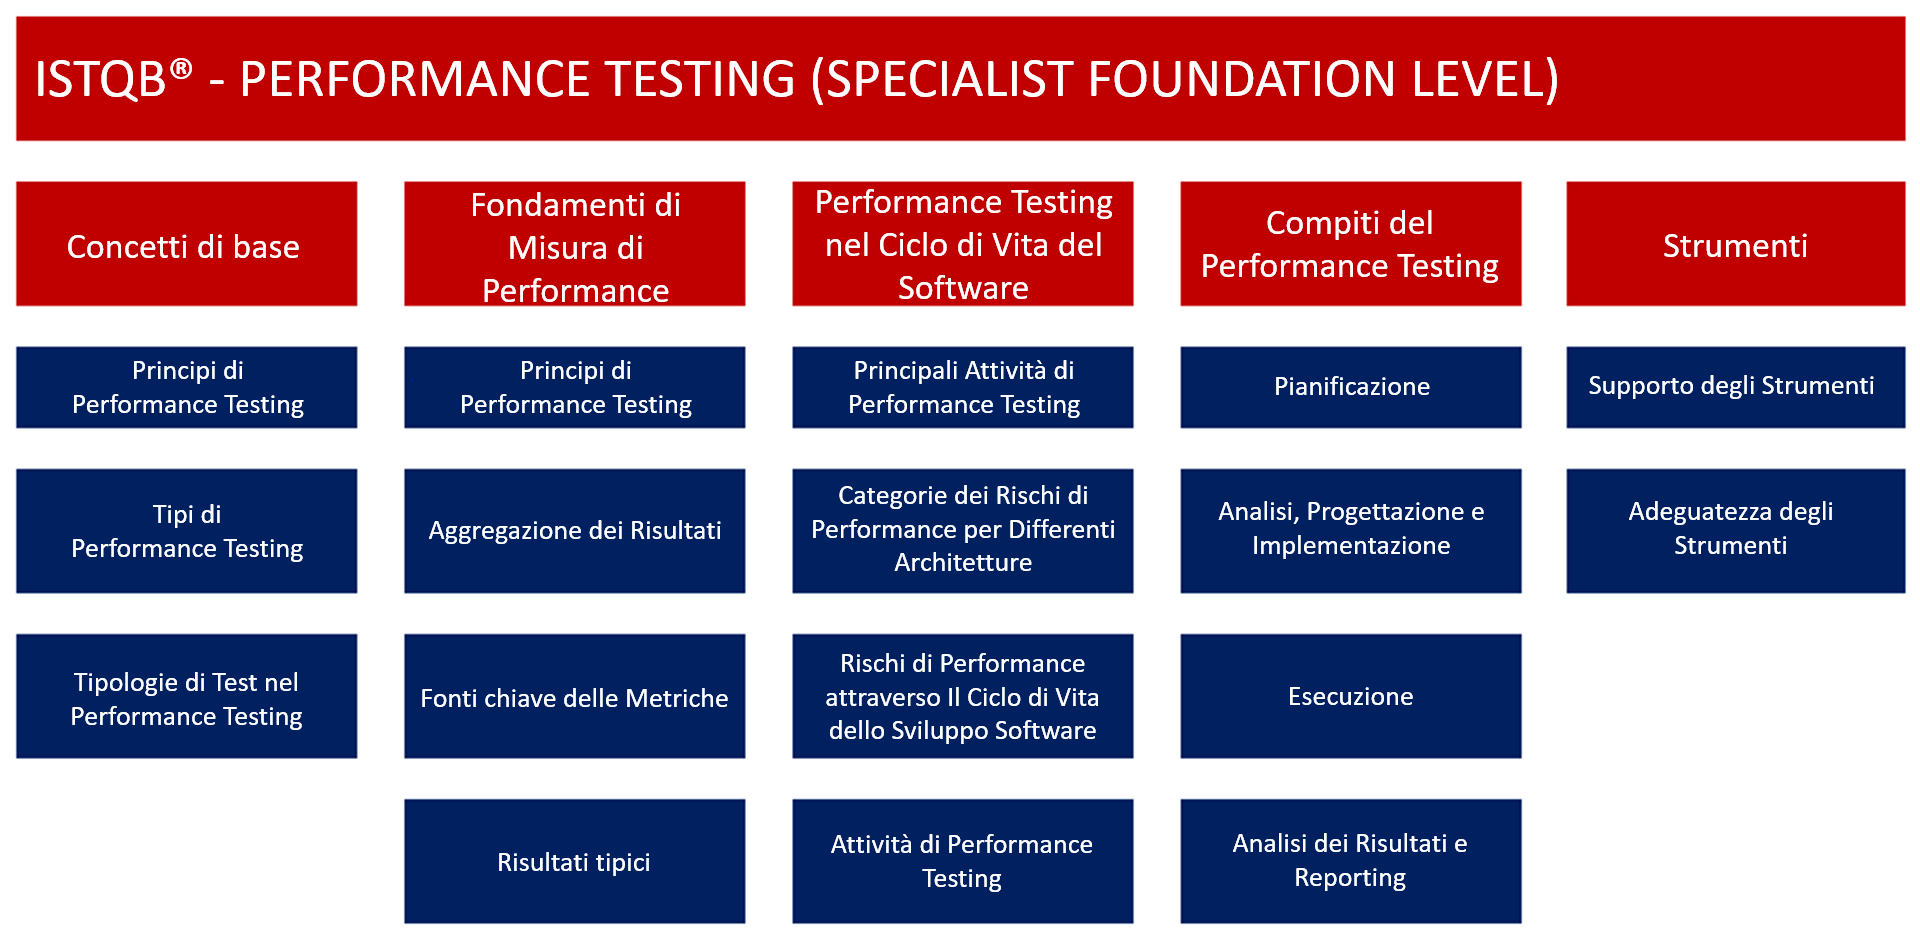 Contenuti della certificazione Specialist Performance Testing